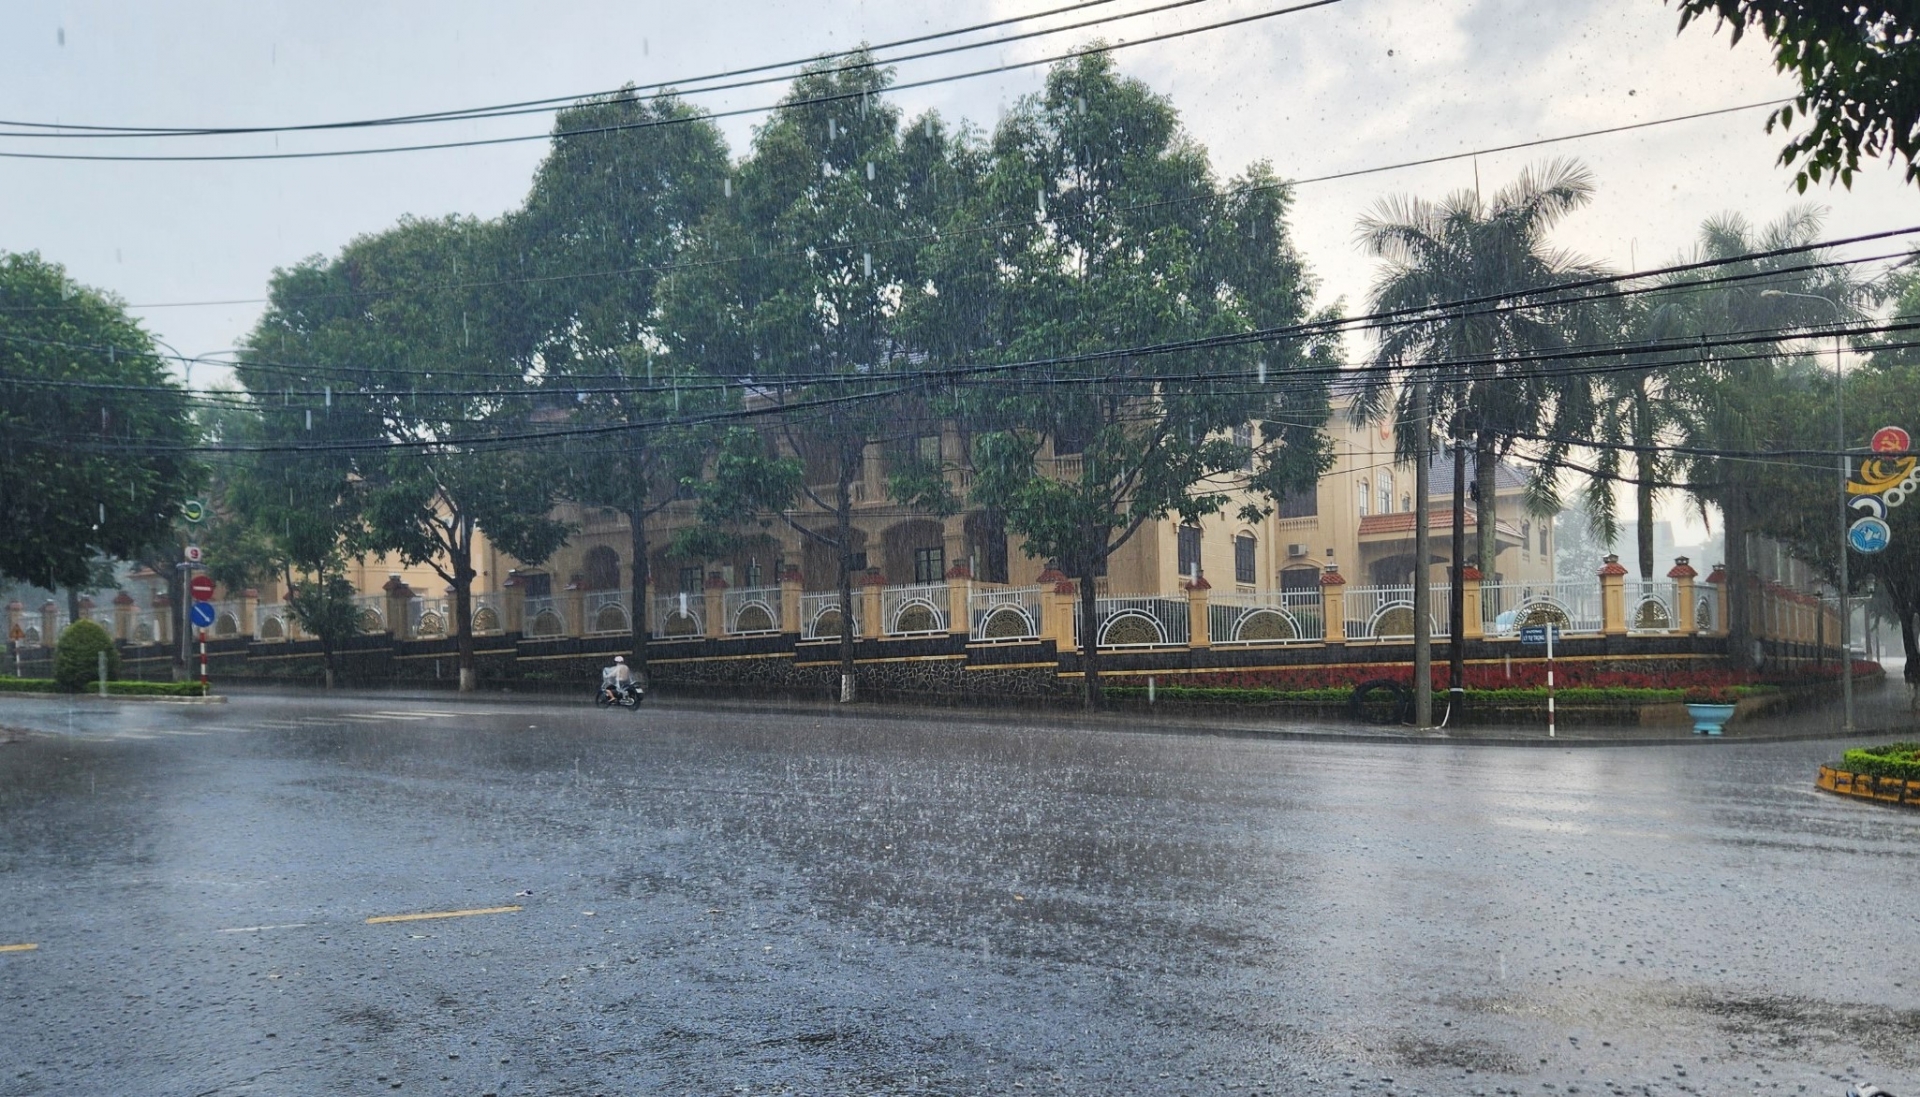 Mưa khá lớn kéo dài gần 1 tiếng đồng hồ khu vực các phường trung tâm TP Bảo Lộc